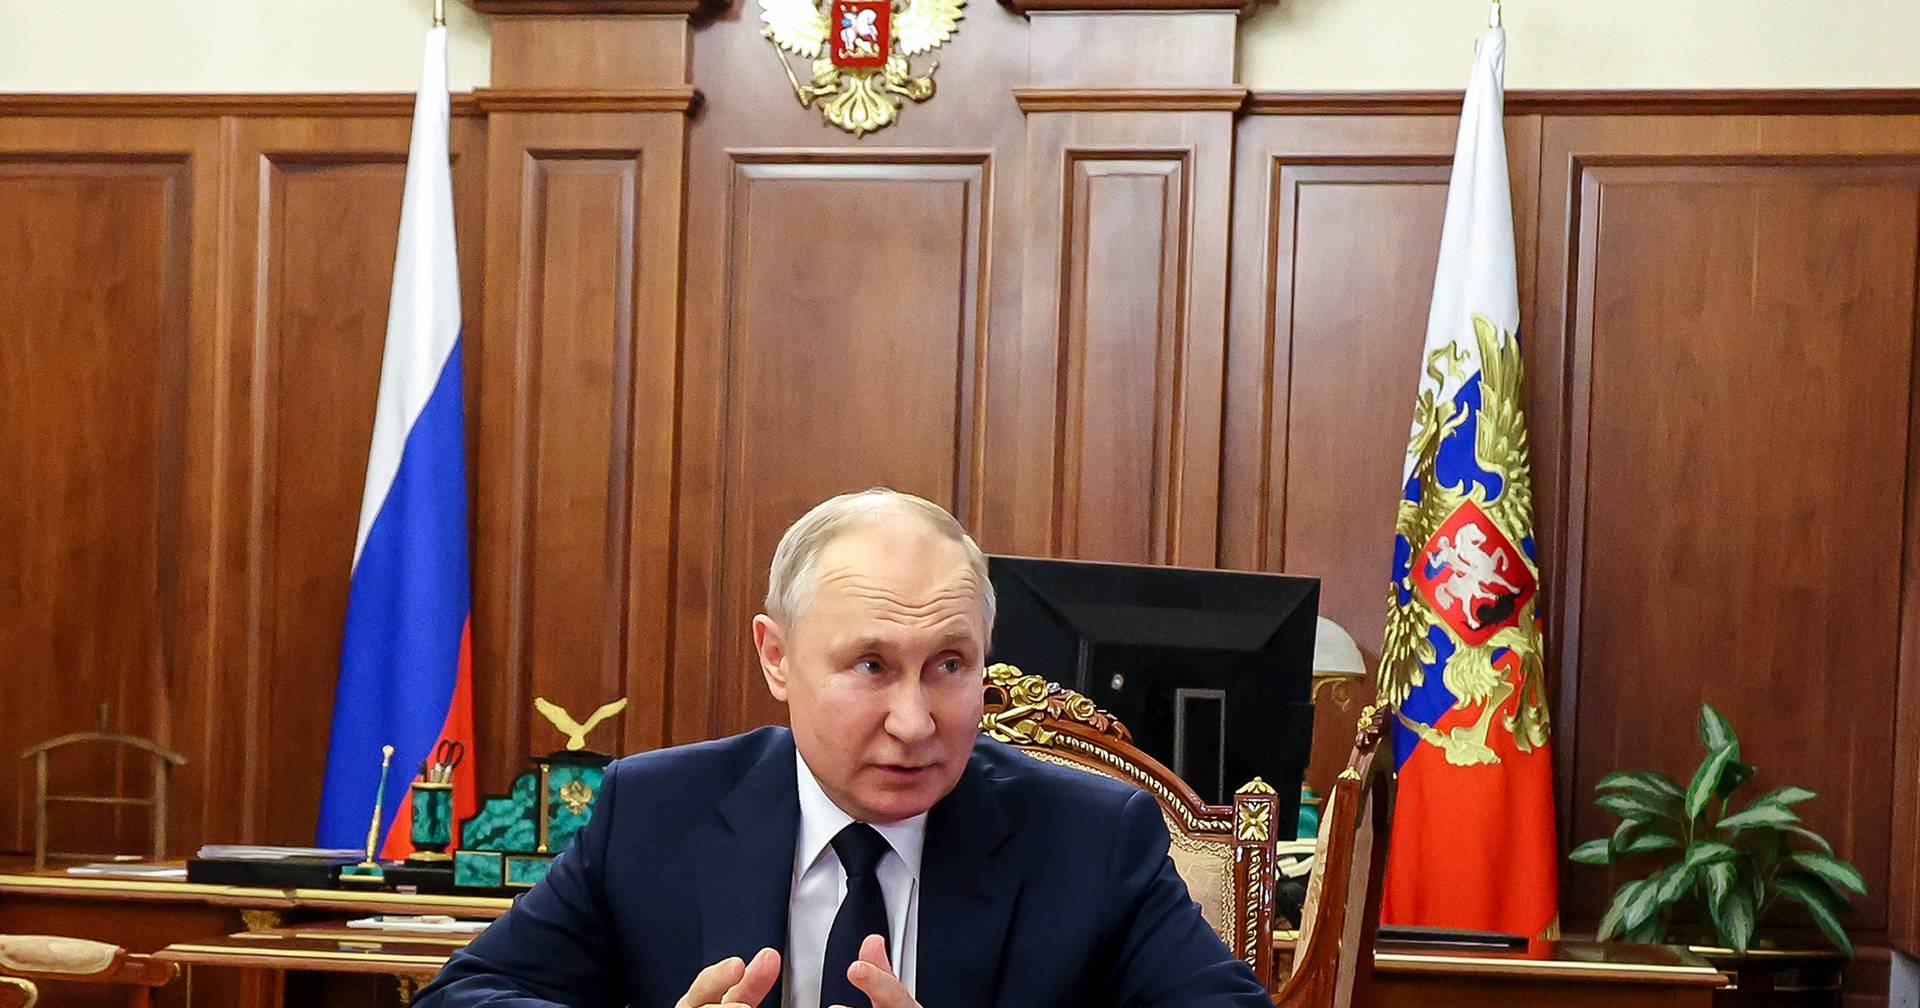 Medios rusos difunden falso discurso de Putin sobre evacuaciones